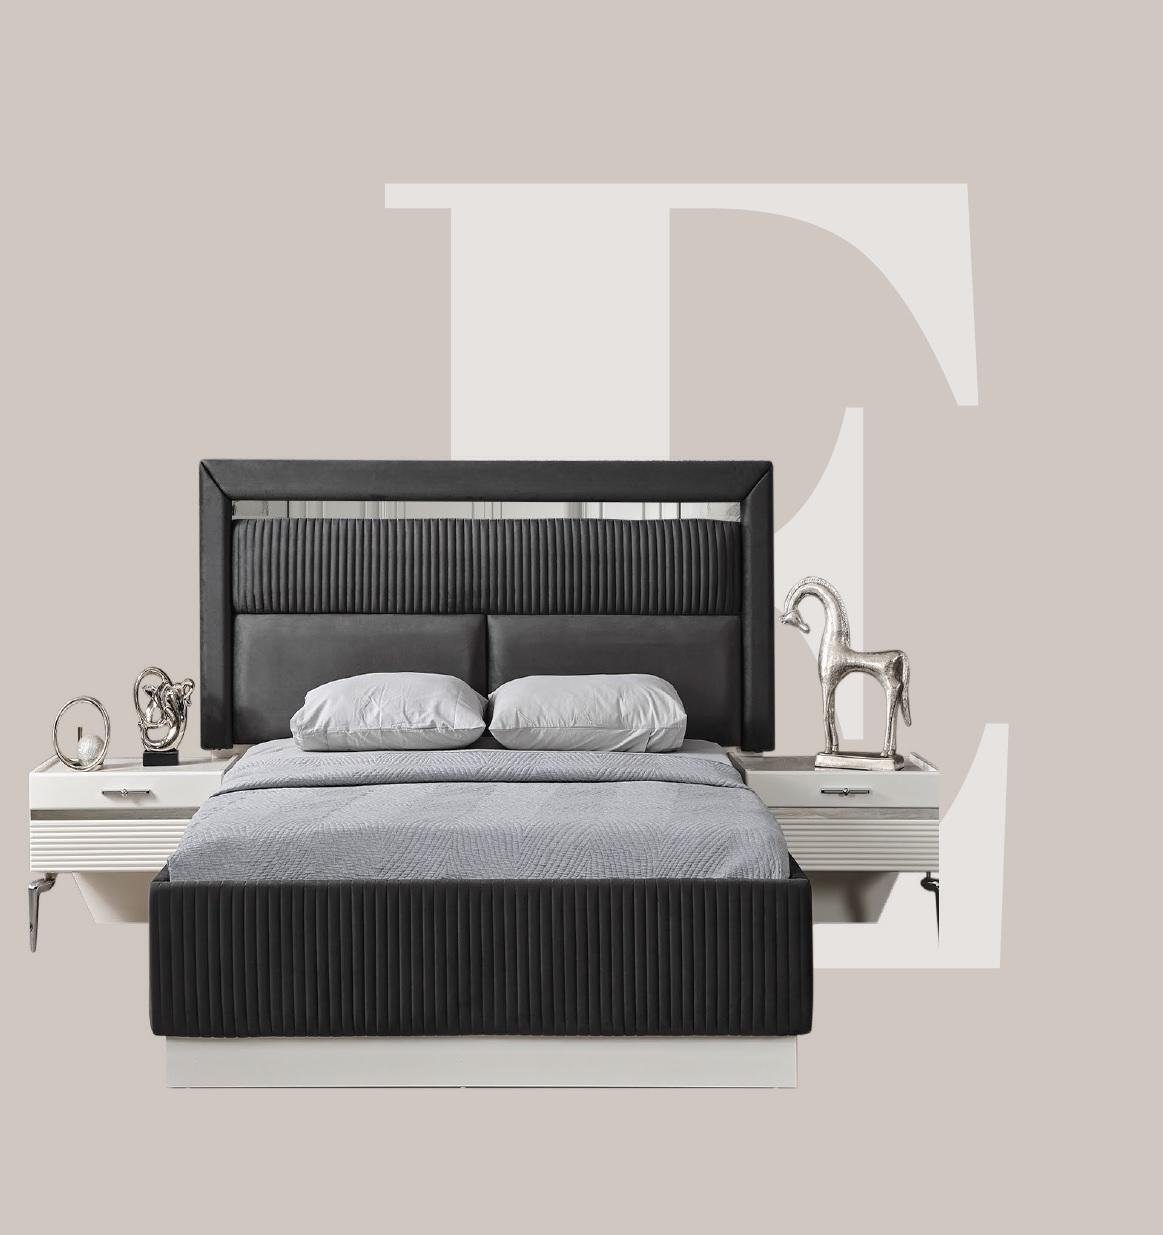 JVmoebel Bett Modern Betten Luxus Schlaf Zimmer Neu Bett Design Luxus Grau